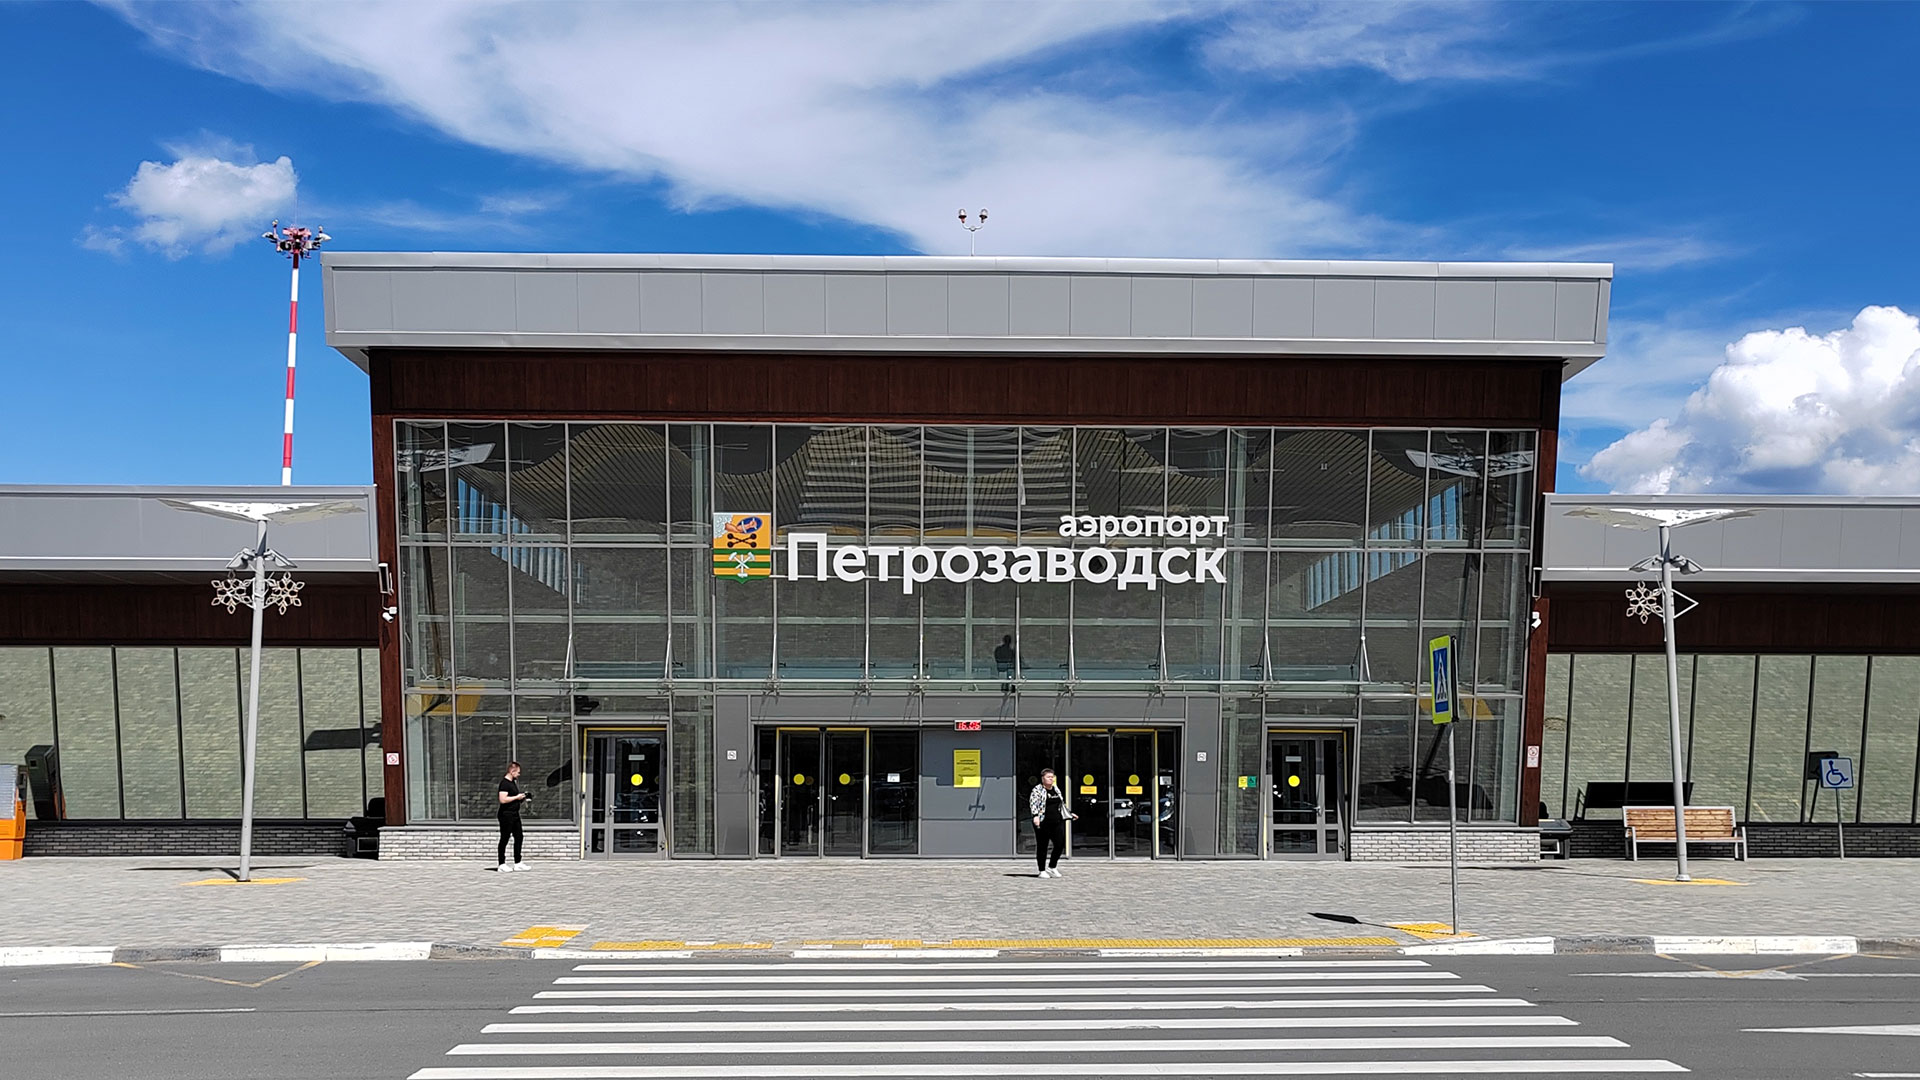 Вход в здание аэровокзала с надписью «Аэропорт Петрозаводск».